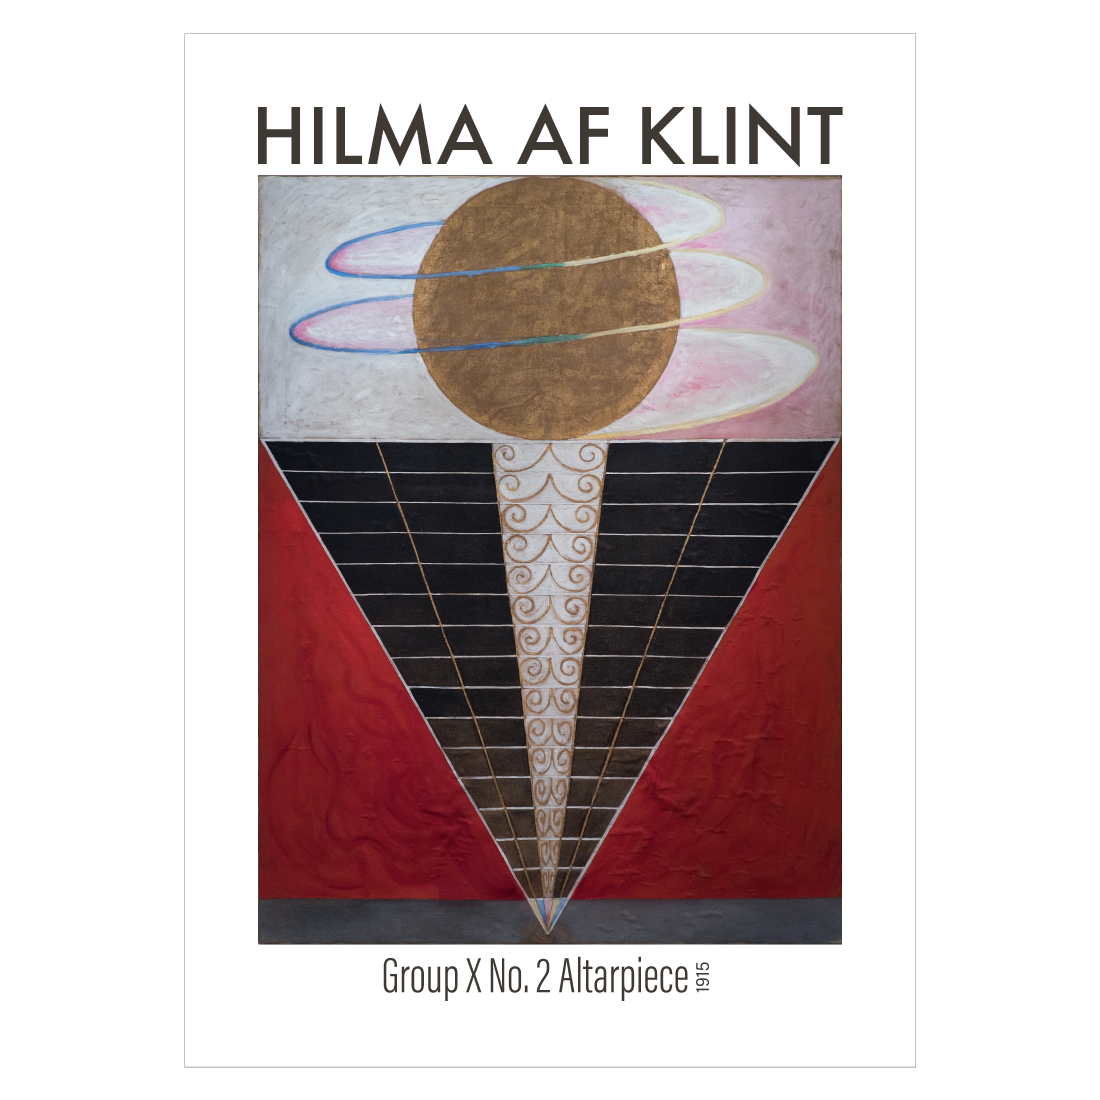 Kunstplakat med Hilma af Klint's "Group X No. 2 Altarpiece"